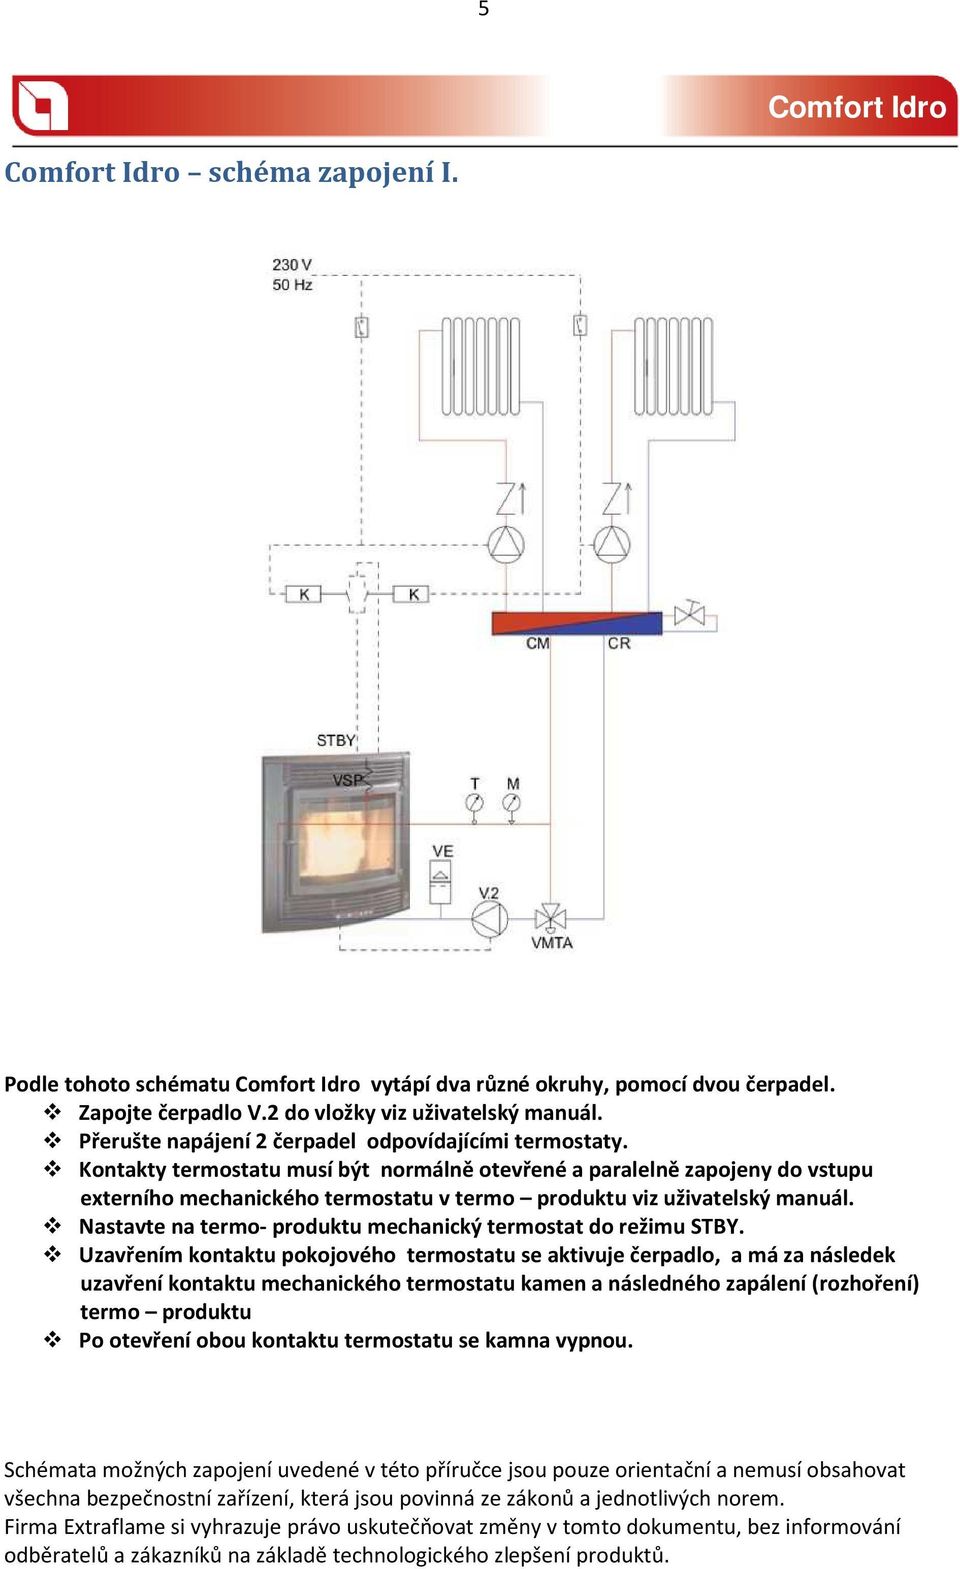 Kontakty termostatu musí být normálně otevřené a paralelně zapojeny do vstupu externího mechanického termostatu v termo produktu viz uživatelský manuál.